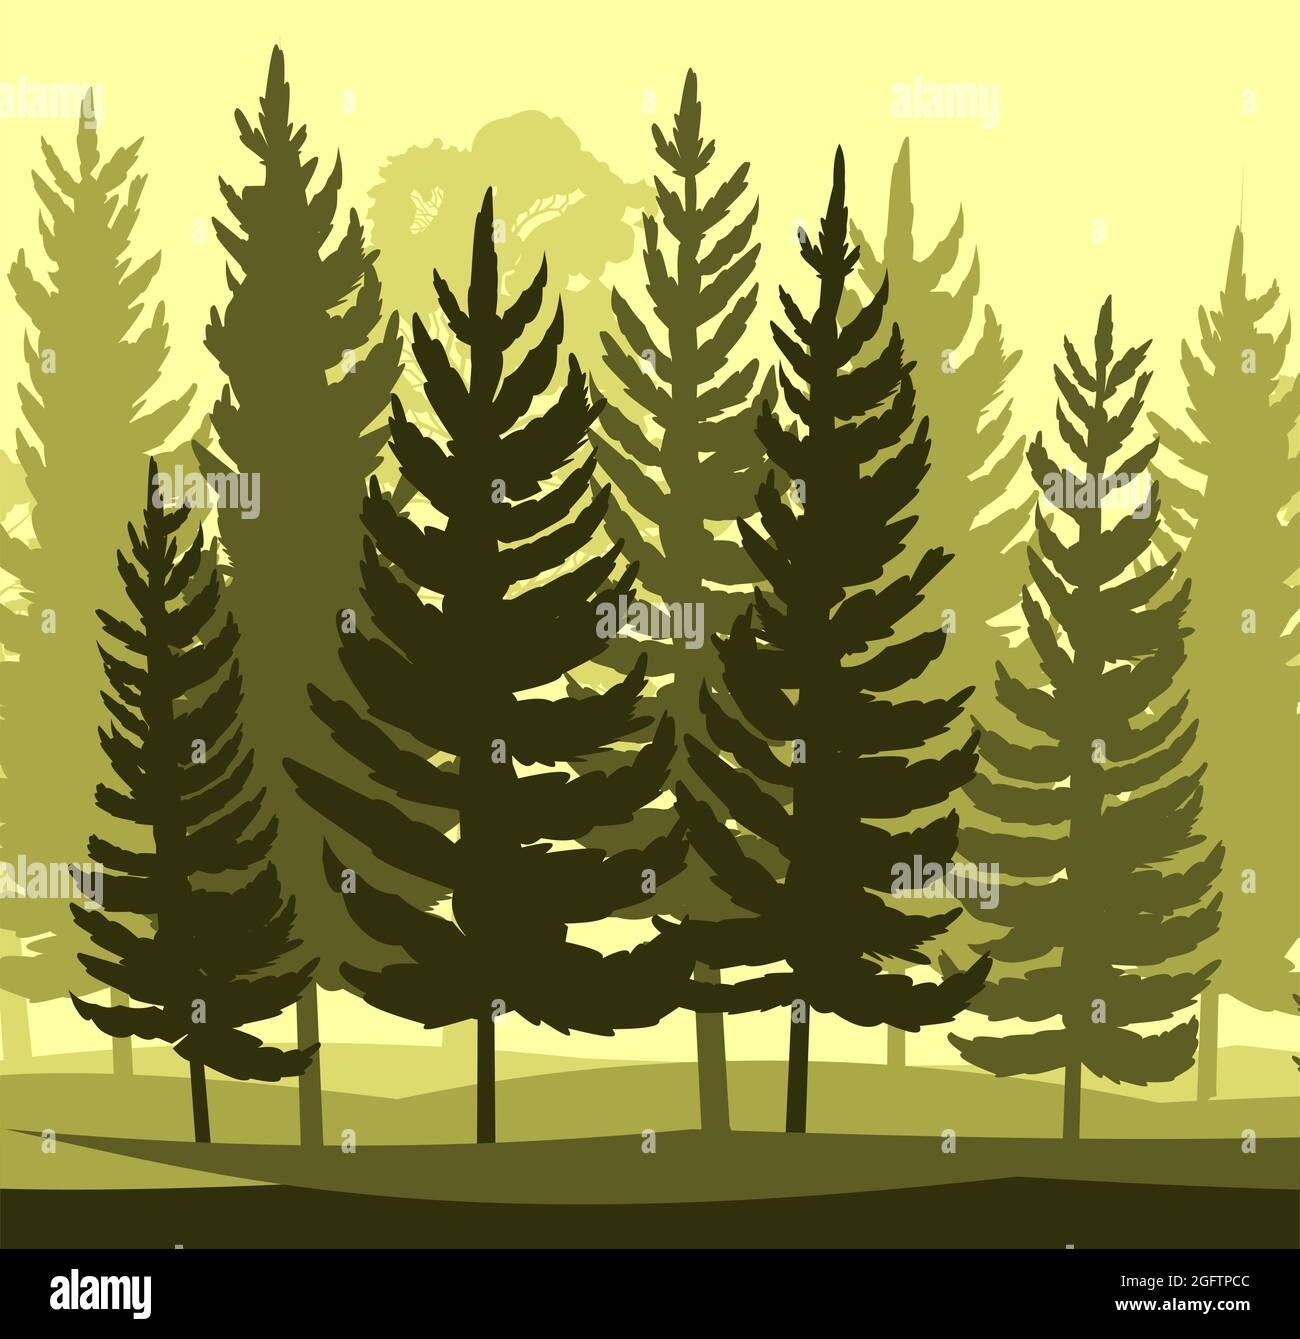 Forest Silhouette. Landschaft mit Nadelbäumen. Wunderschöne Aussicht. Kiefern- und Fichtenbäume. Sommer Naturlandschaft. Illustrationsvektor. Stock Vektor